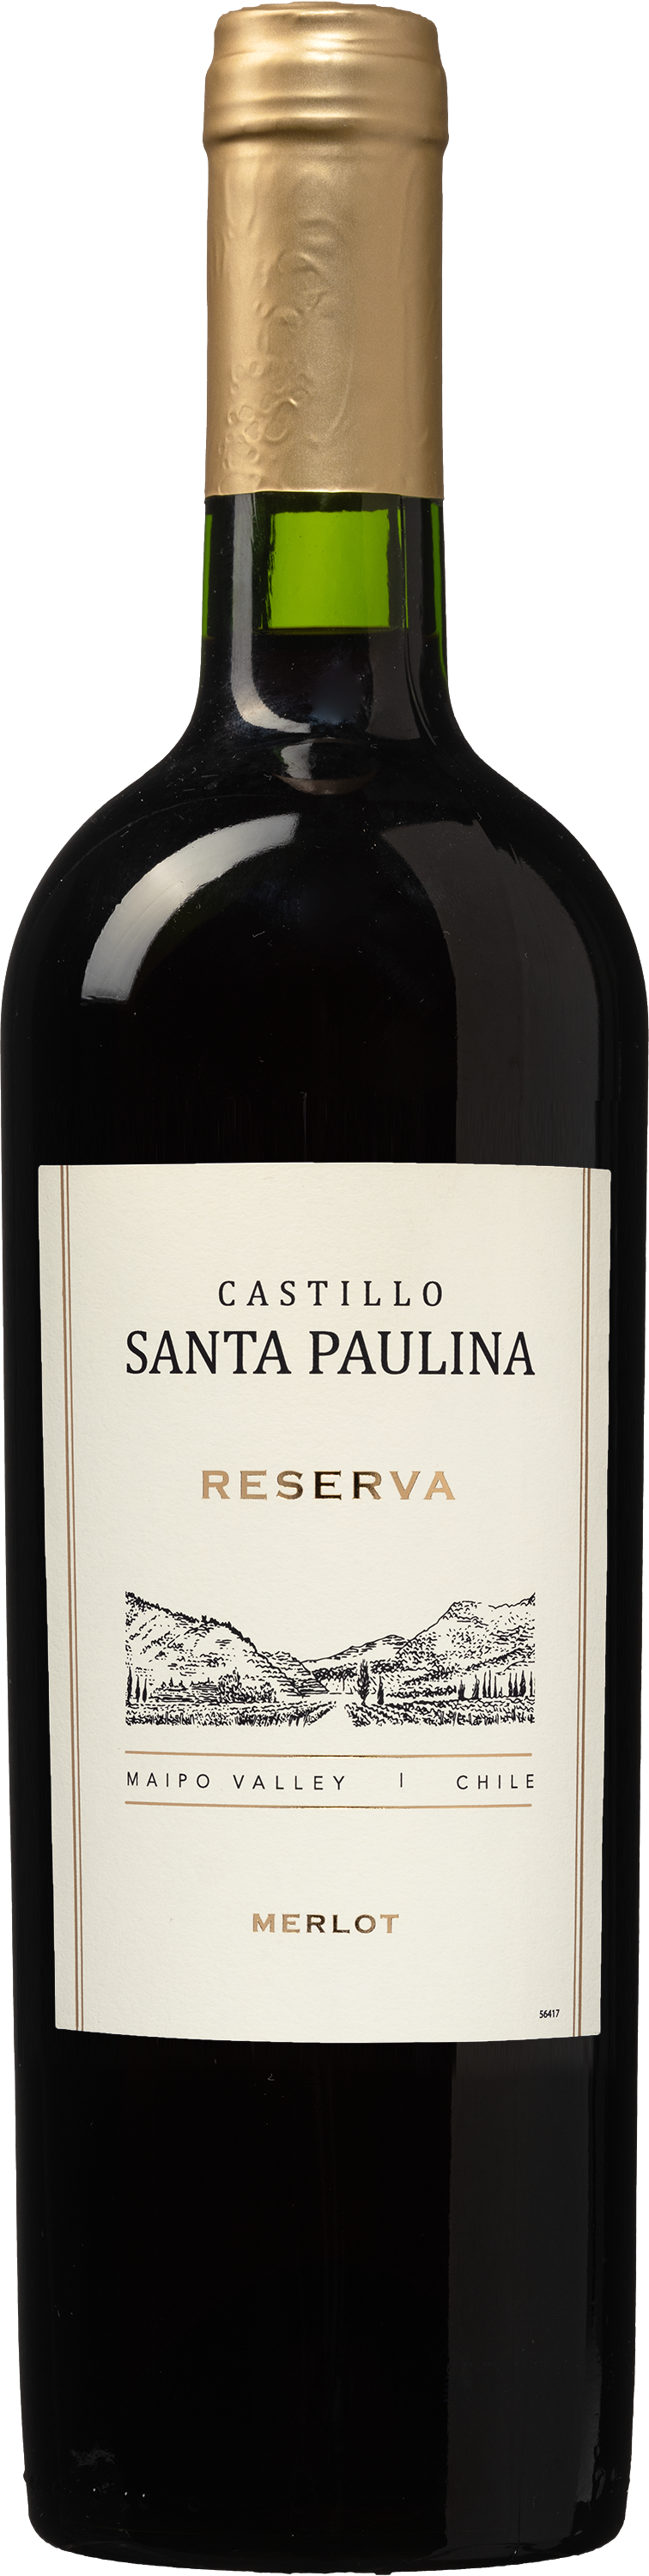 Wijnvoordeel Castillo Santa Paulina Merlot Reserva - Rood